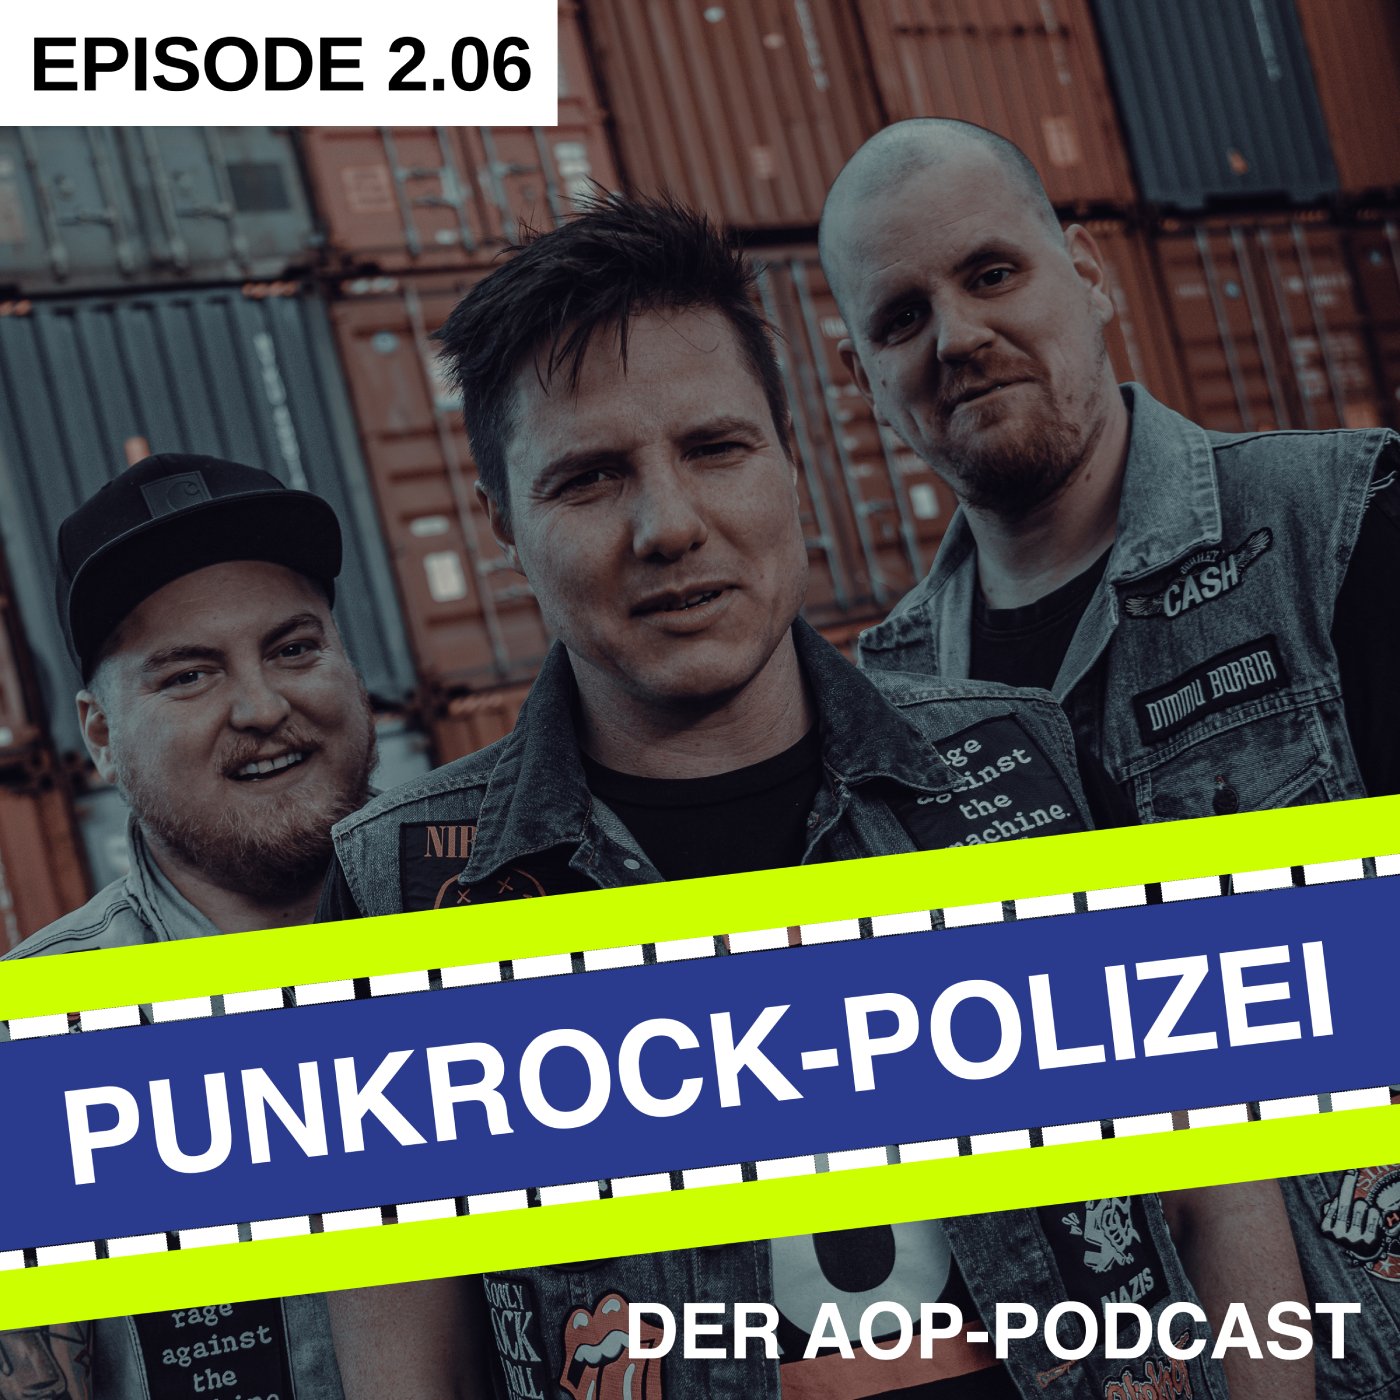 Episode 2.06 – Quo vadis, Punkrock-Polizei?